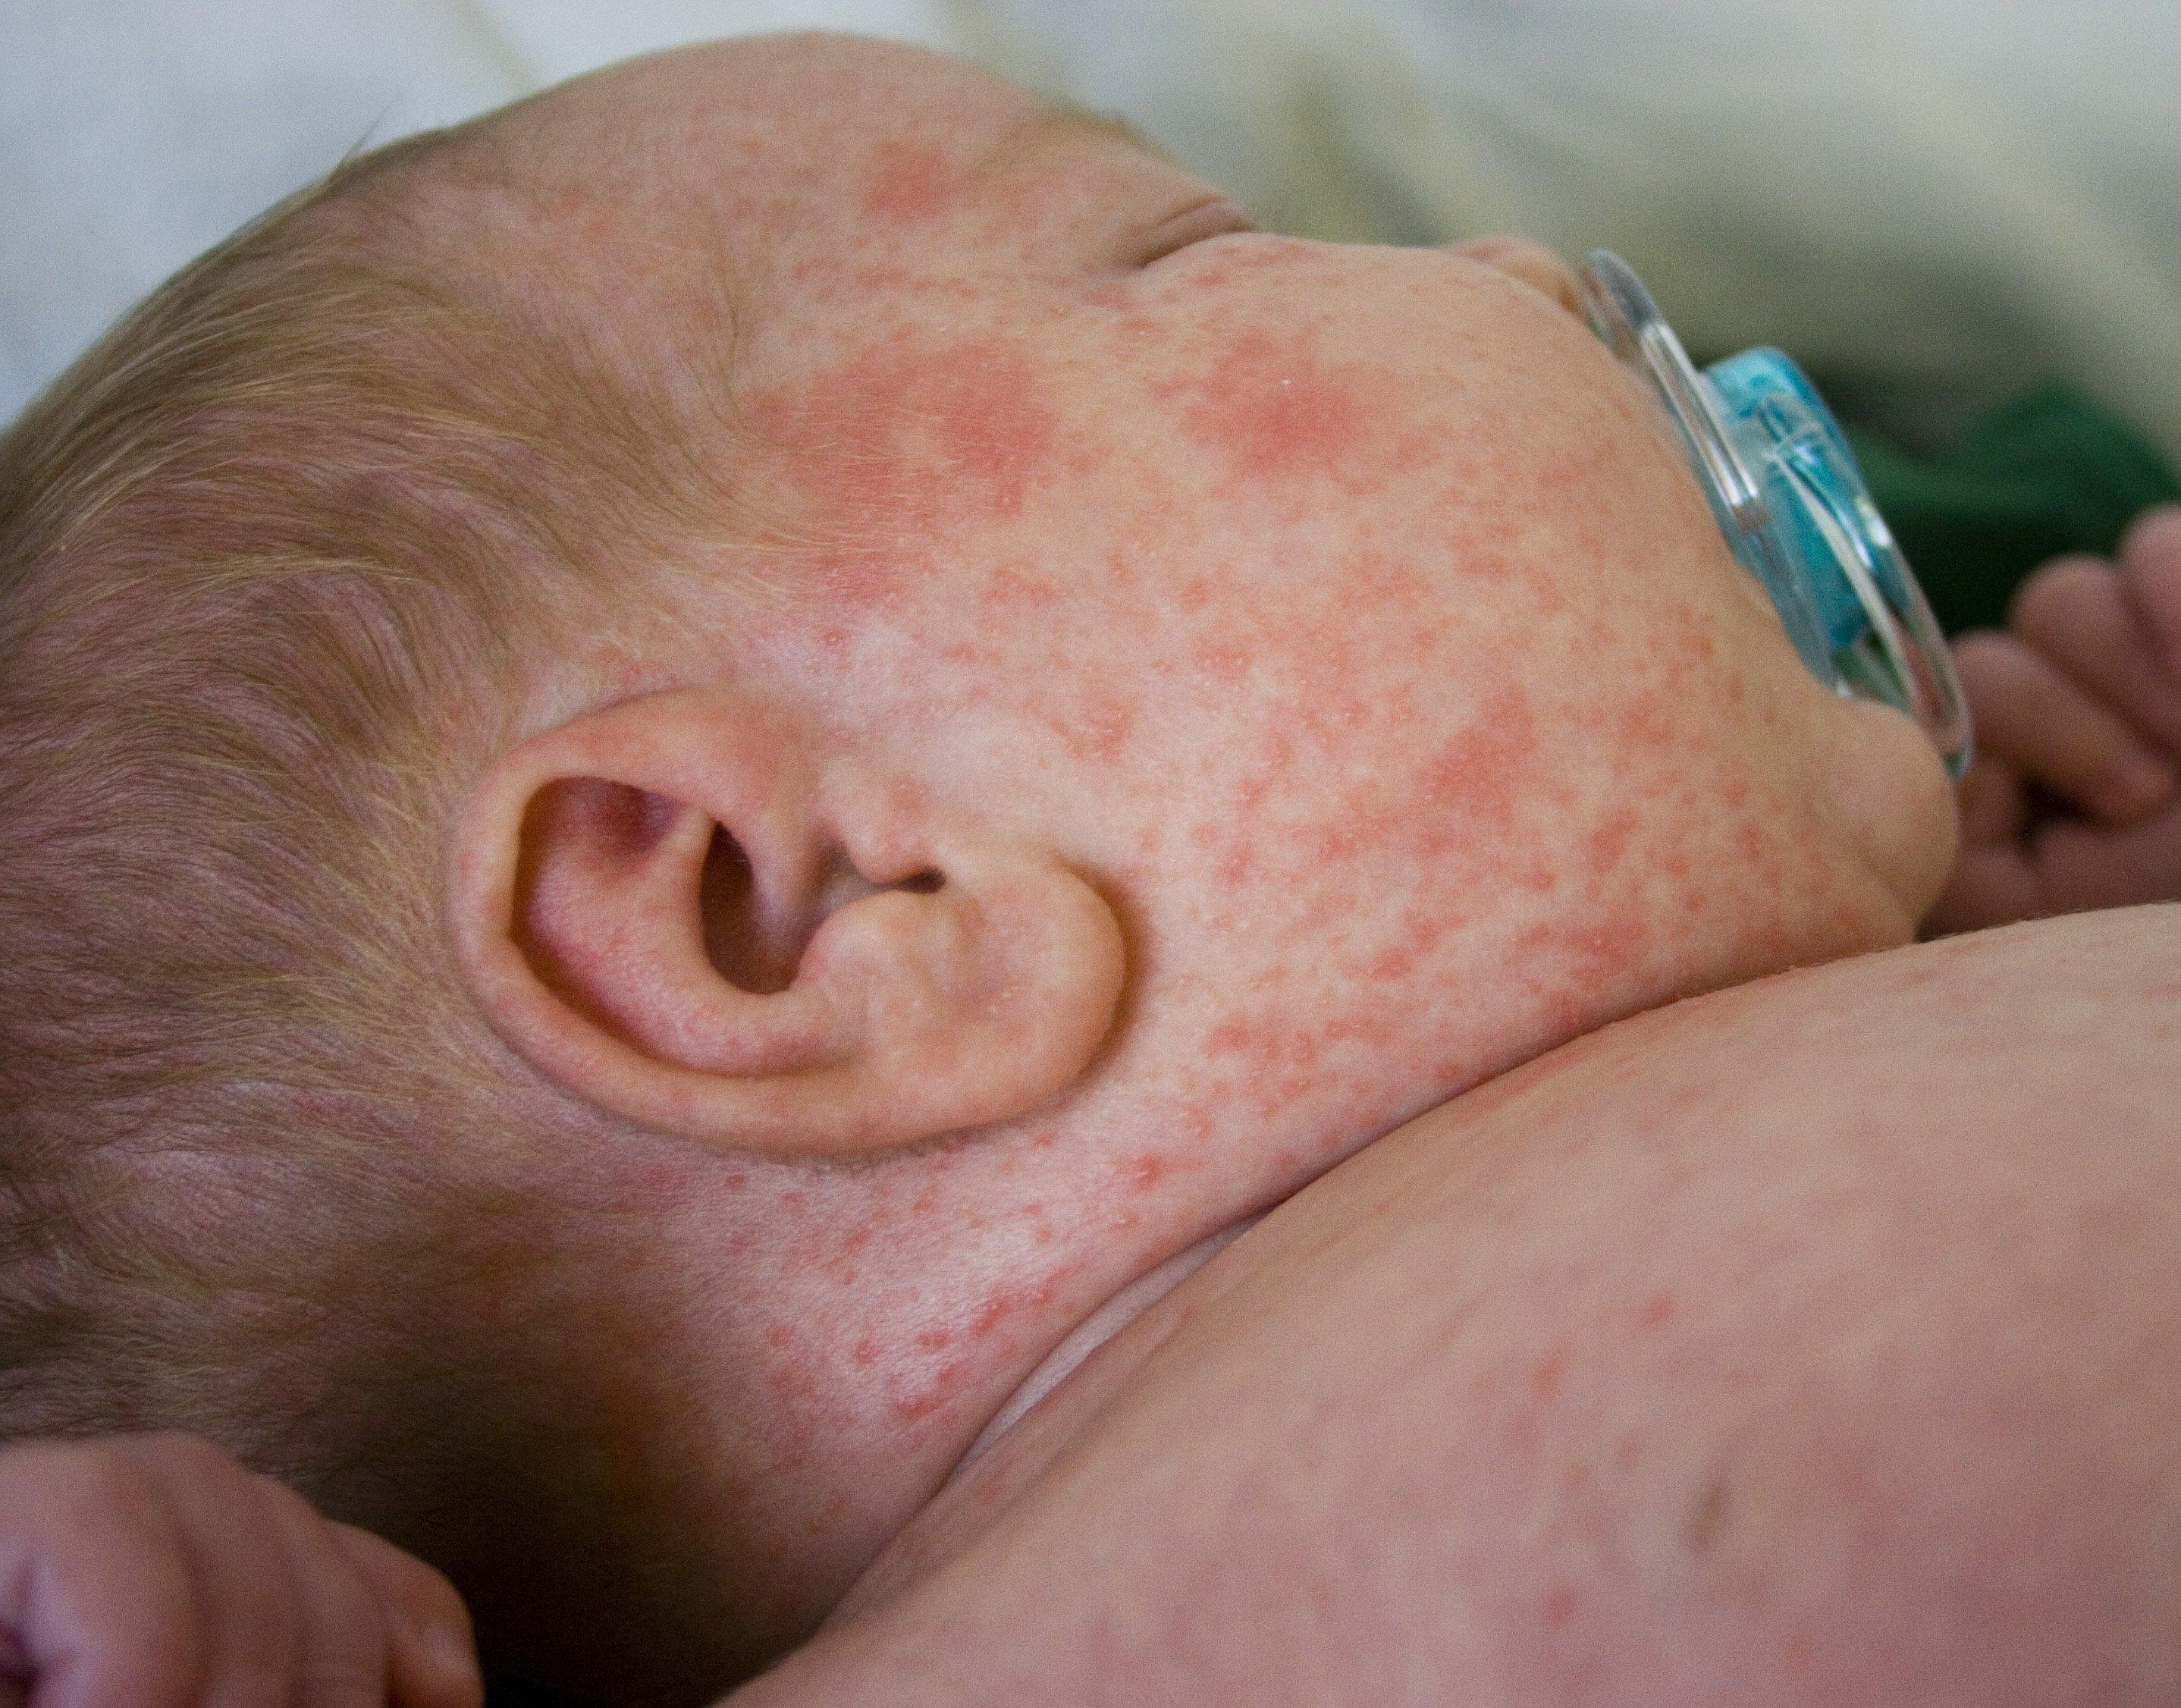 Rubble reccomend Treating newborn facial rash